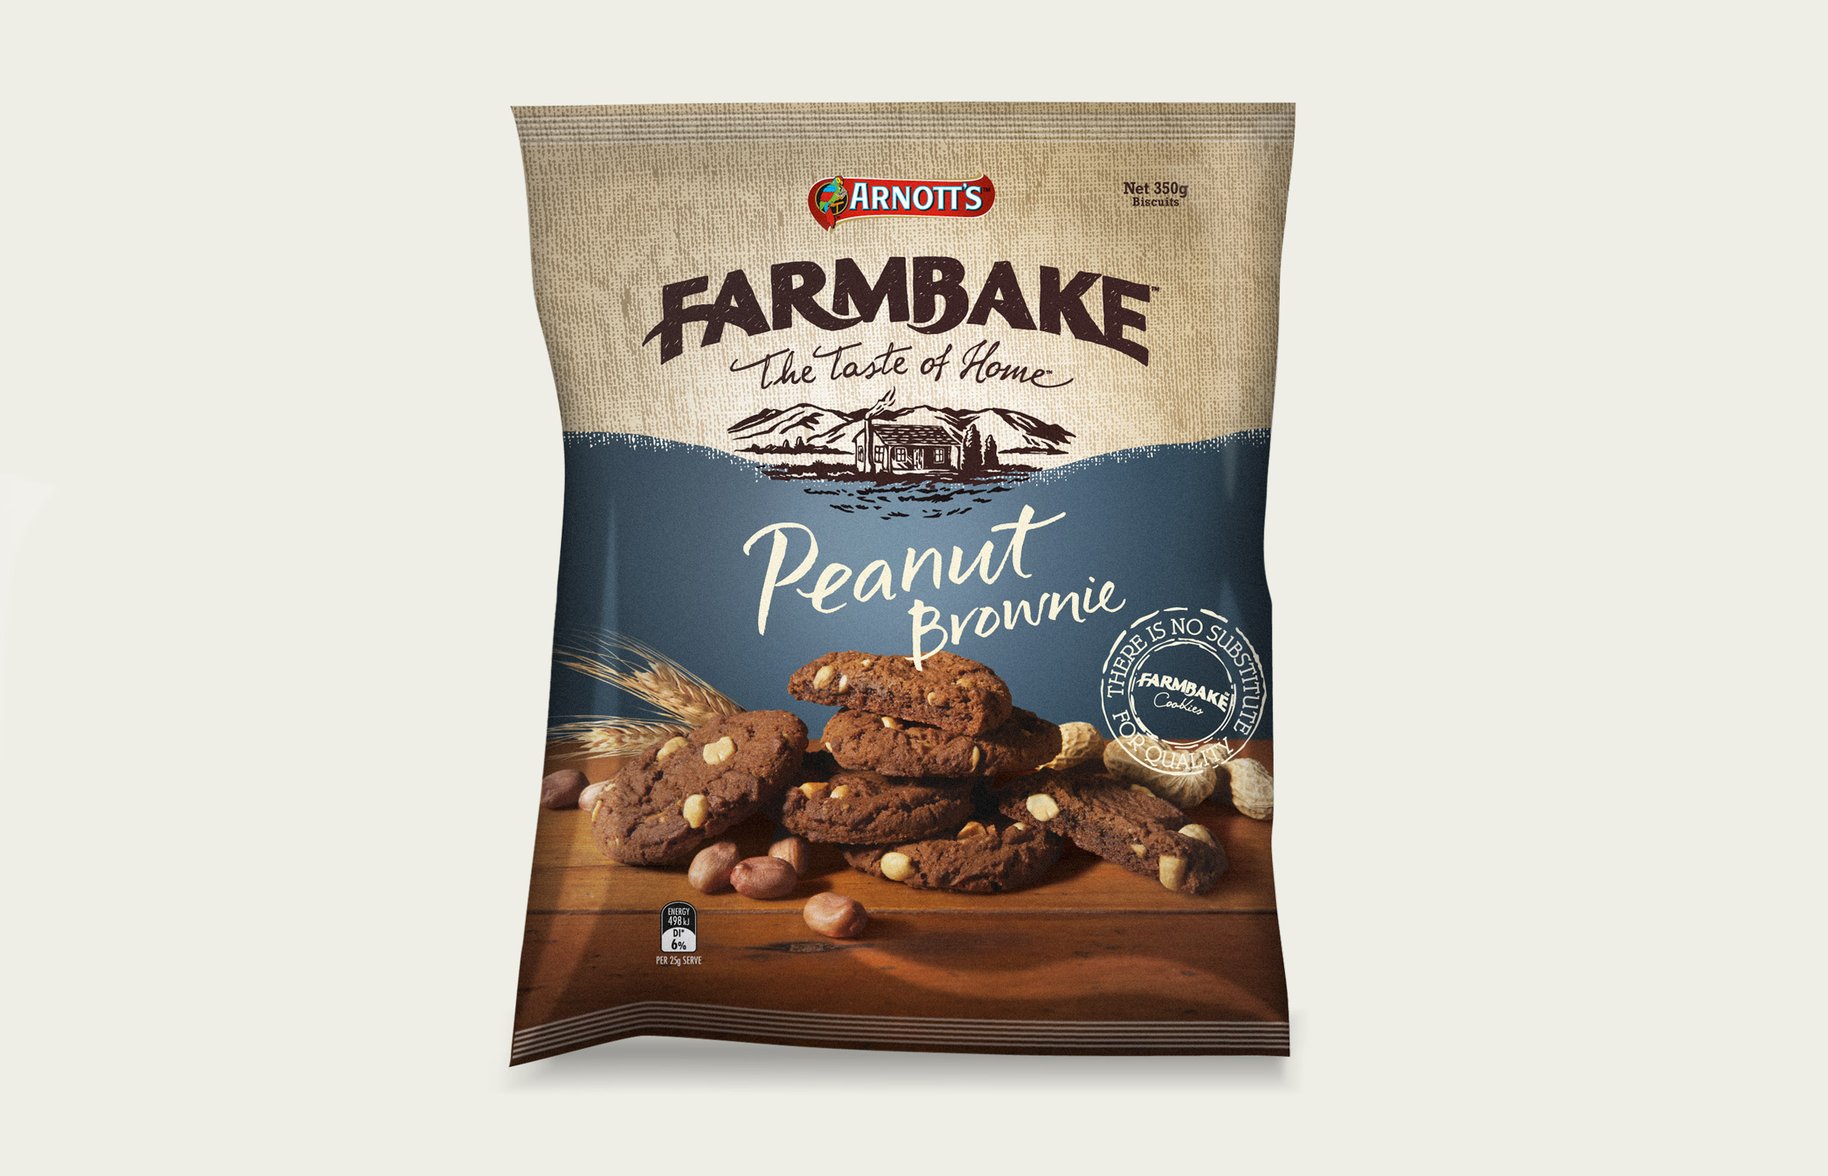 FarmBake Peanut Brownie Biscuits Packaging